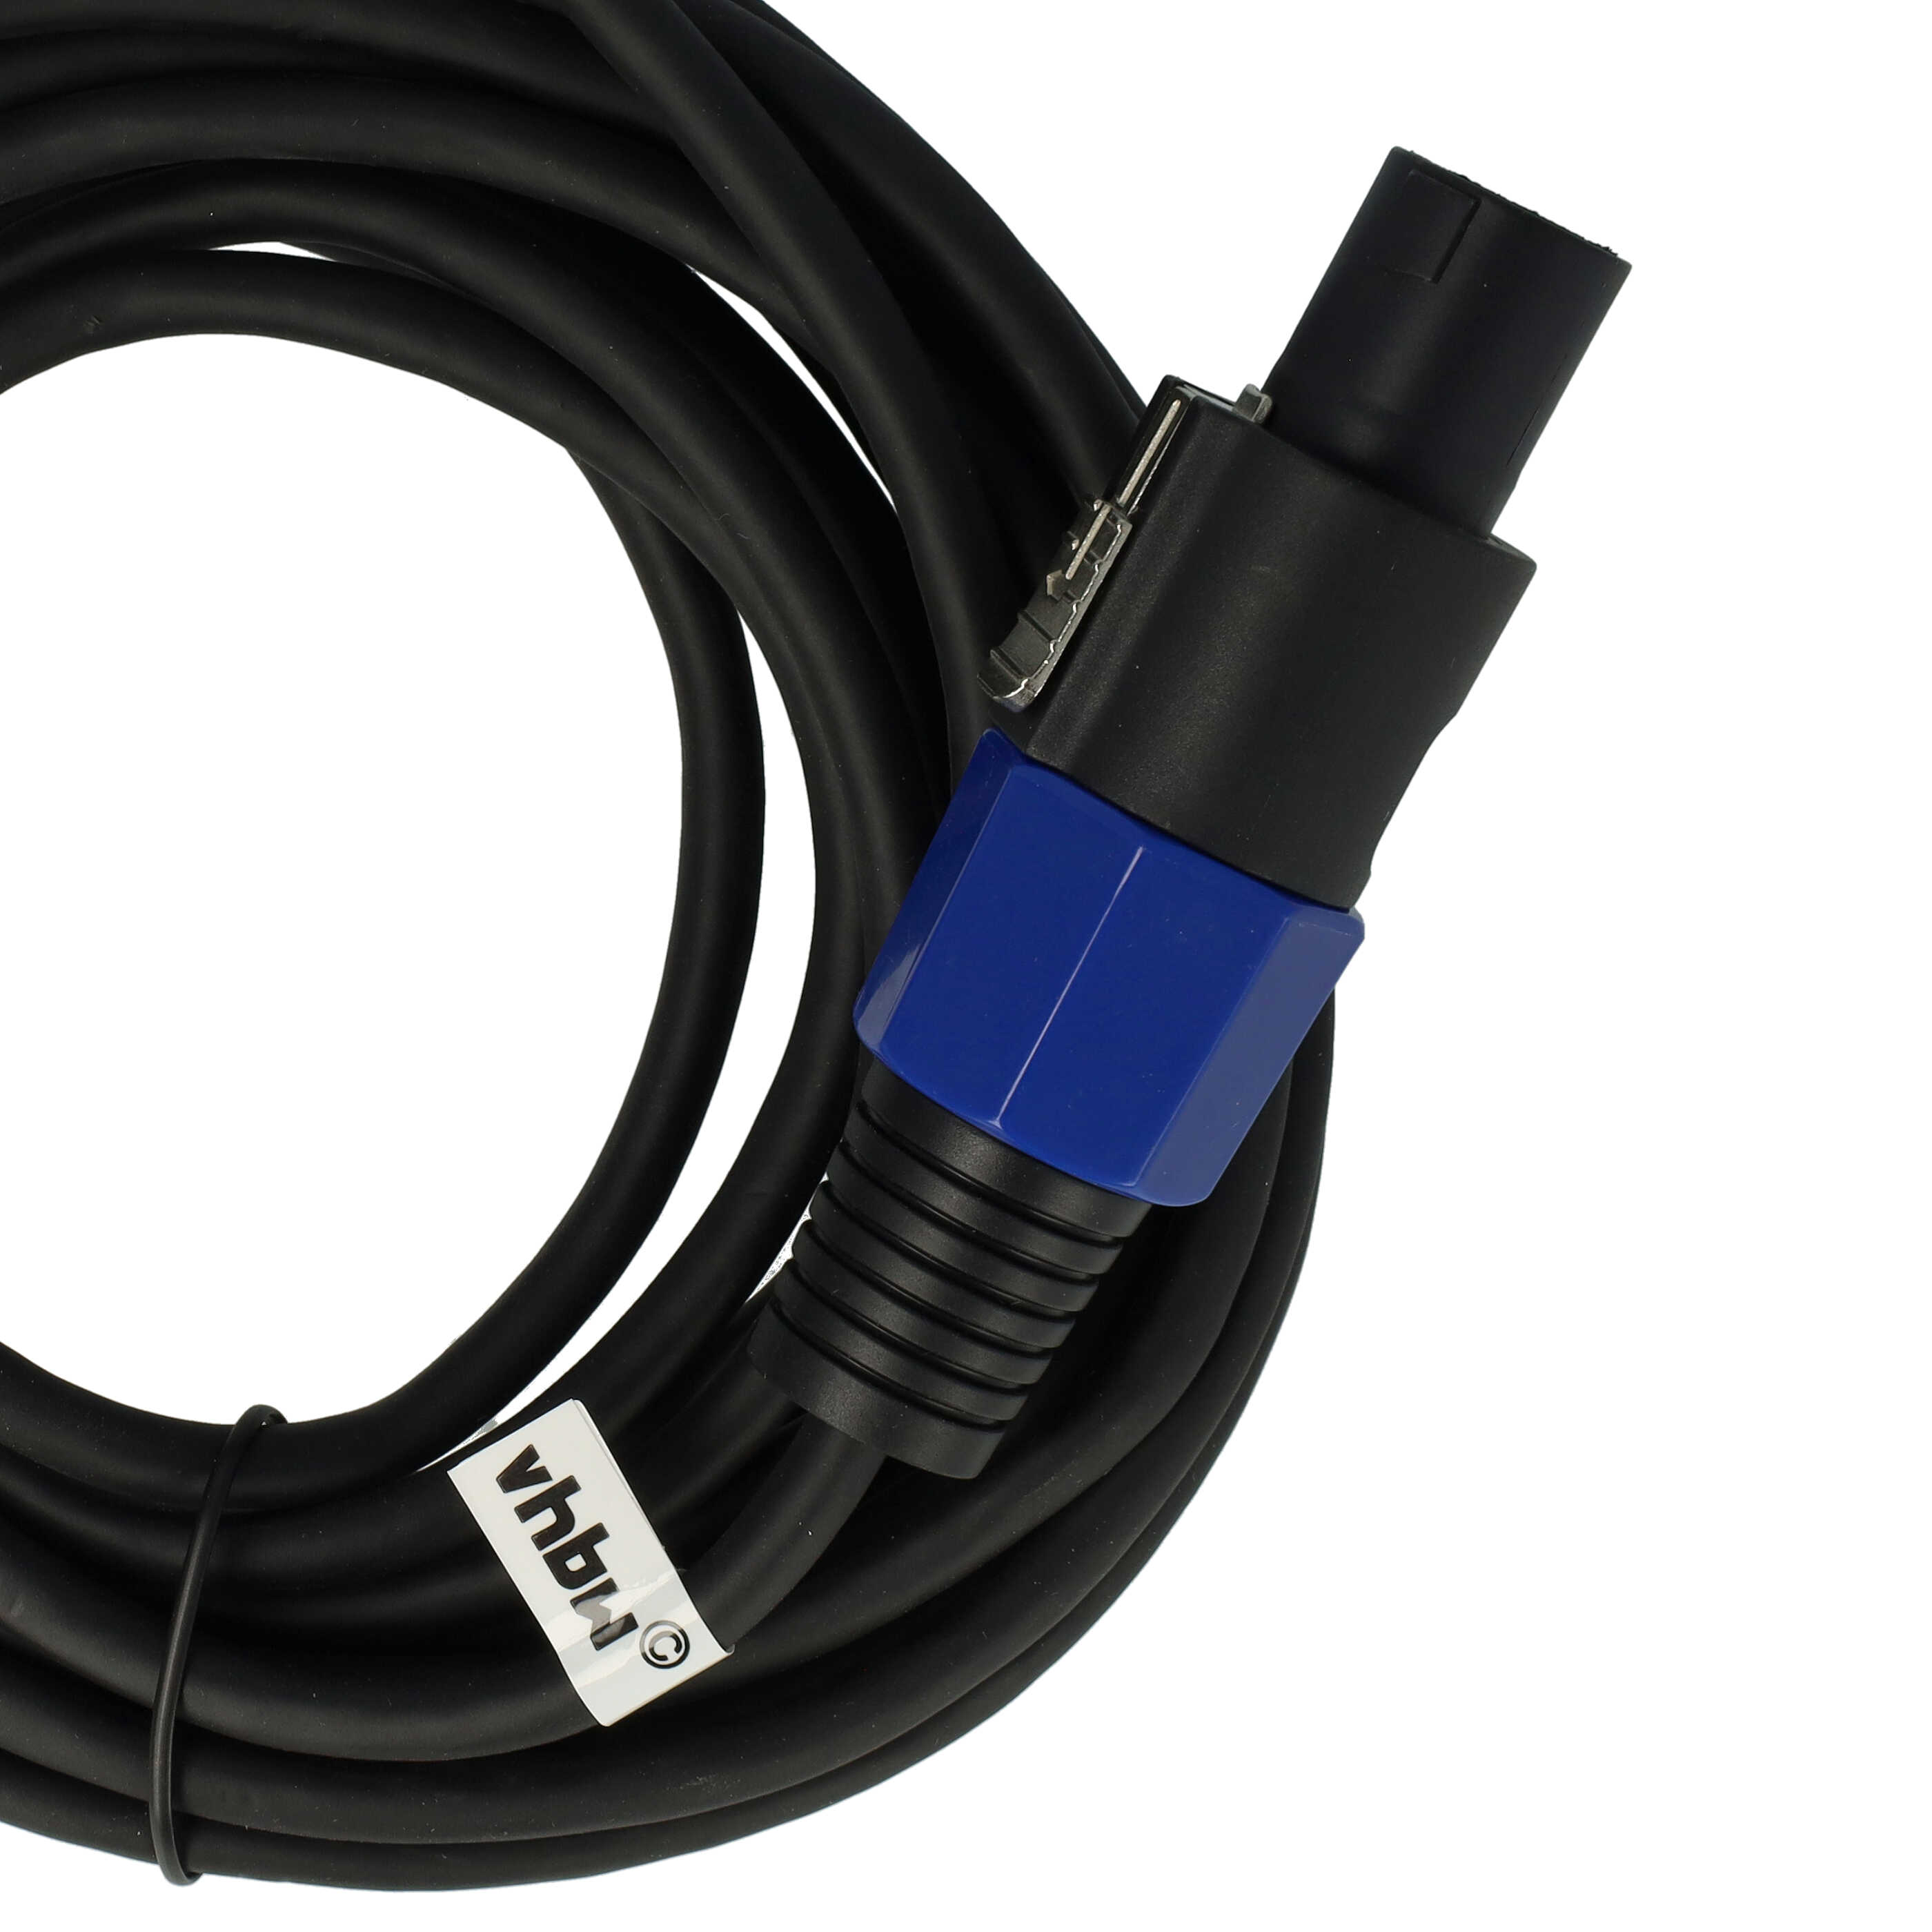 Kabel PA do basu B1, B2, ze złączem Speakon Bose, wszystkie moduły basowe B1 - kabel audio, 5 m